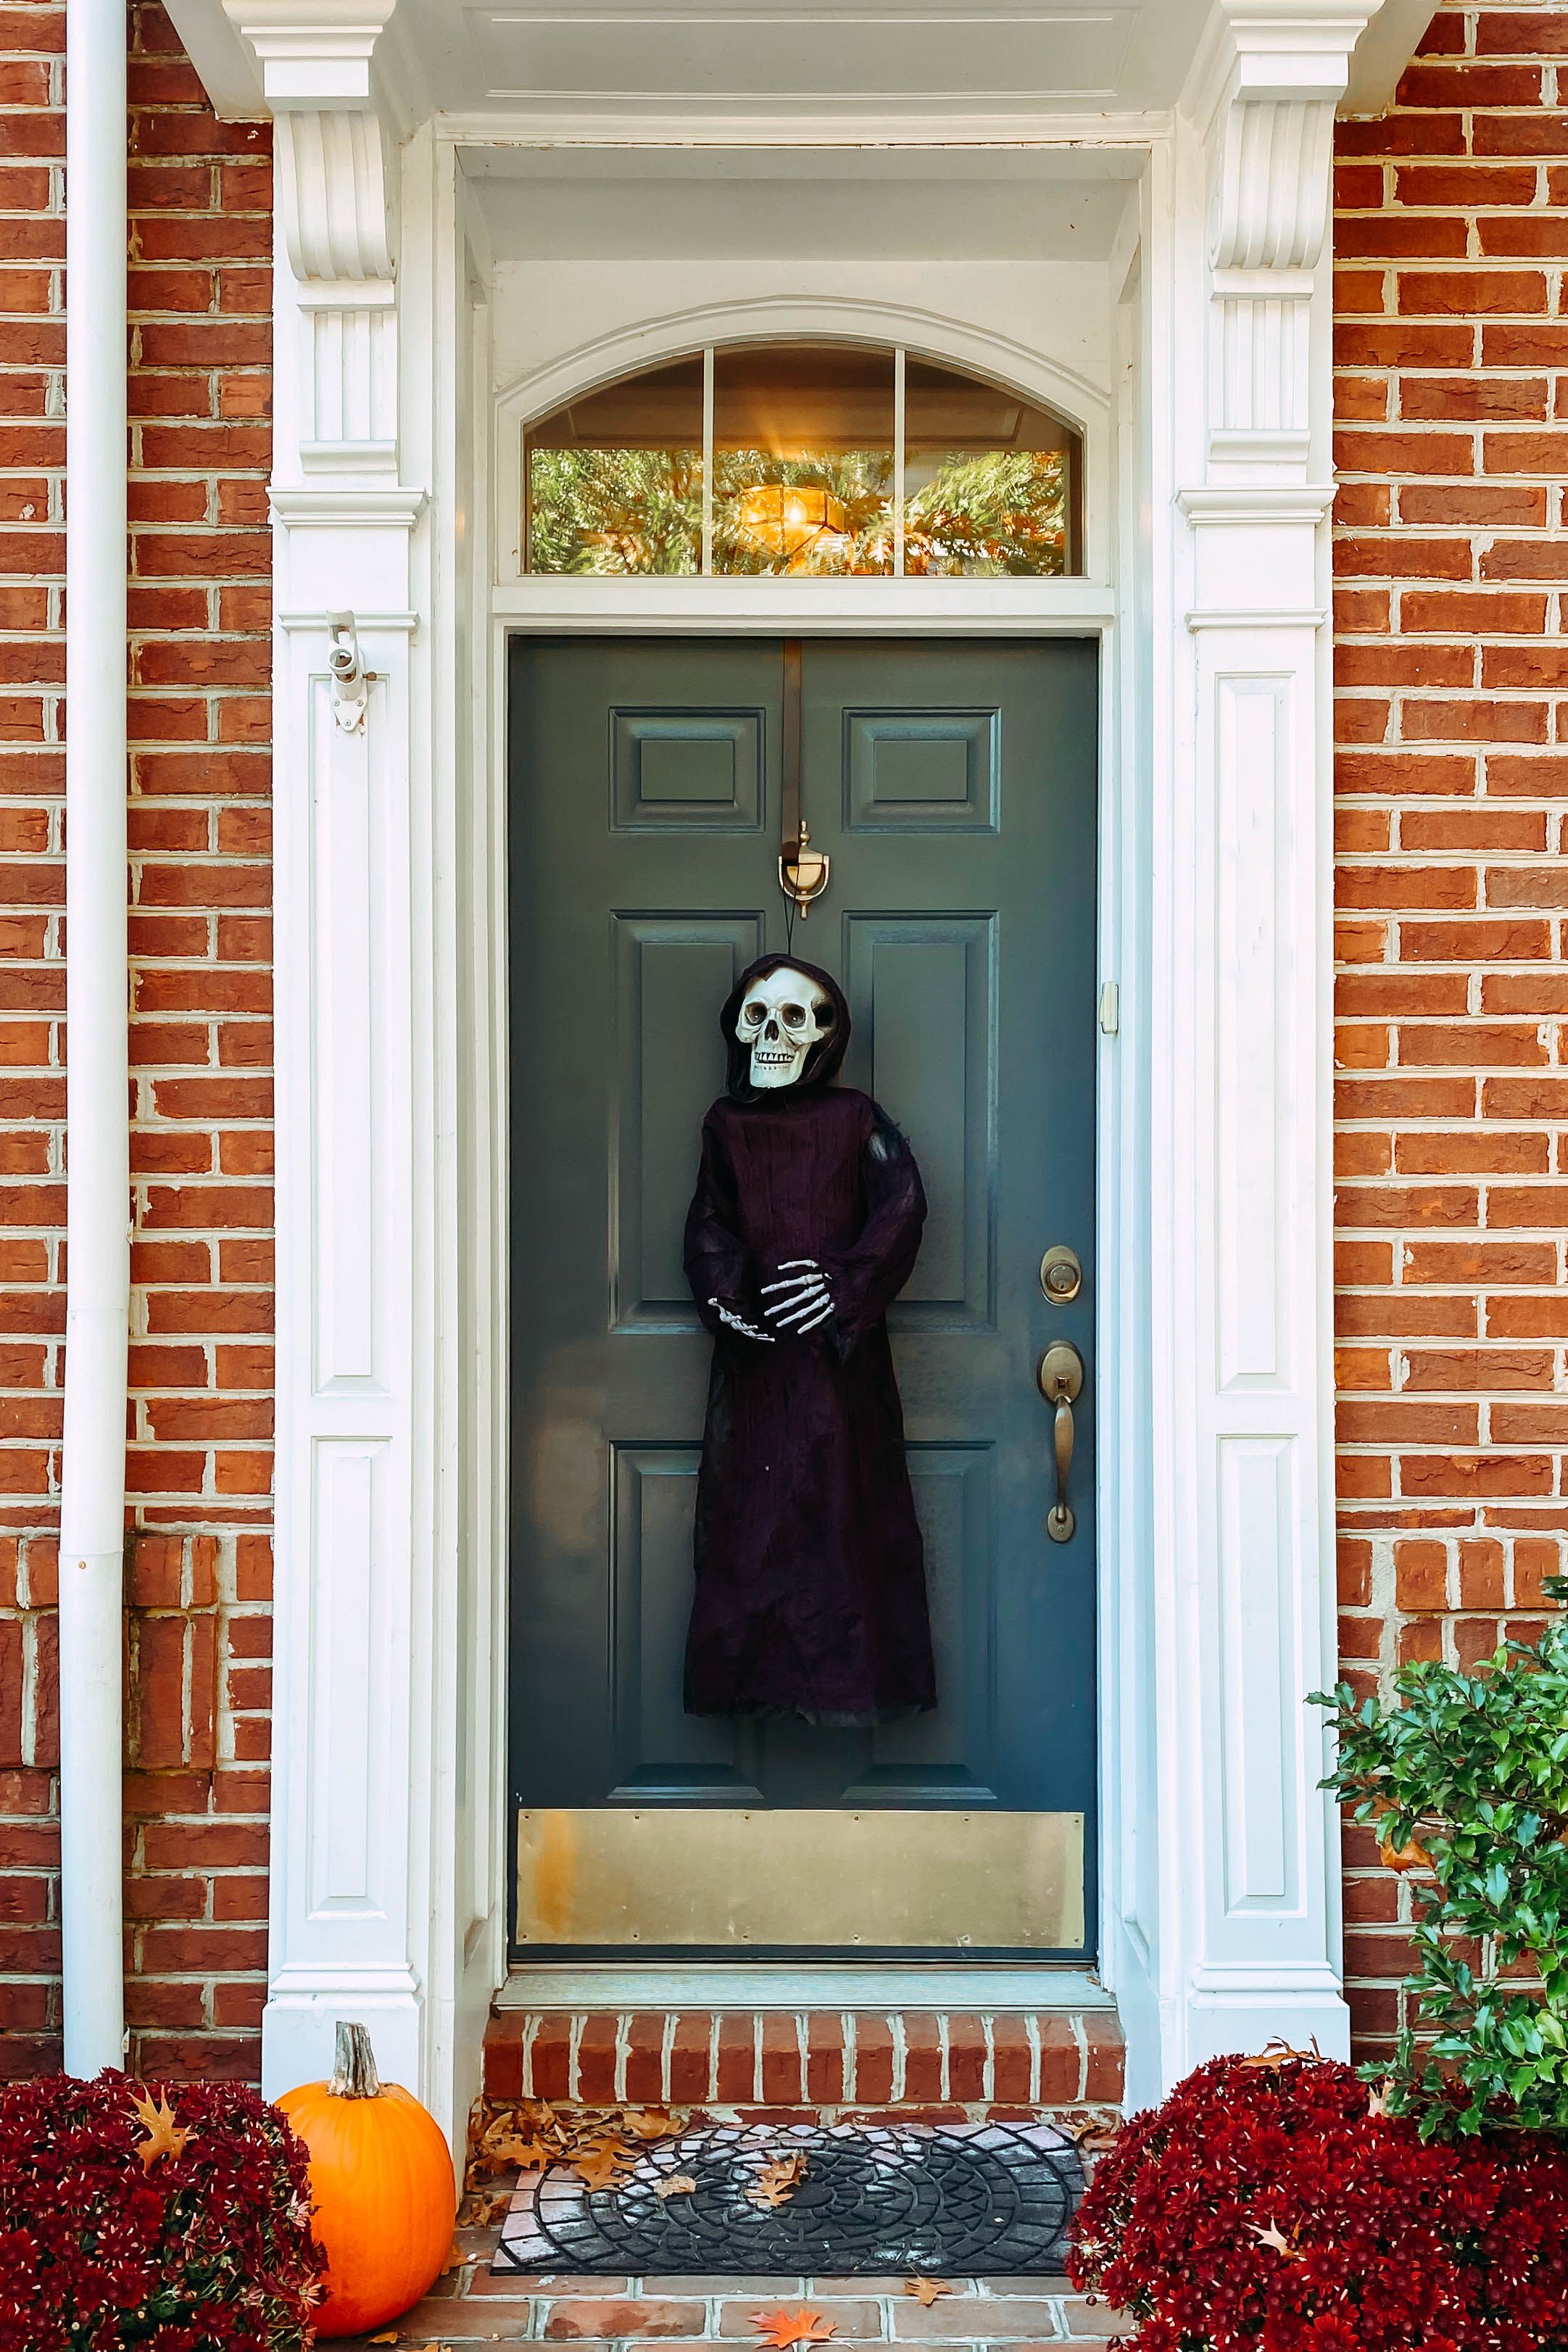 HALLOWEEN GRAVEYARD DOORWAY CURTAIN DOOR COVER DECORATION HAUNTED HOUSE ENTRANCE 